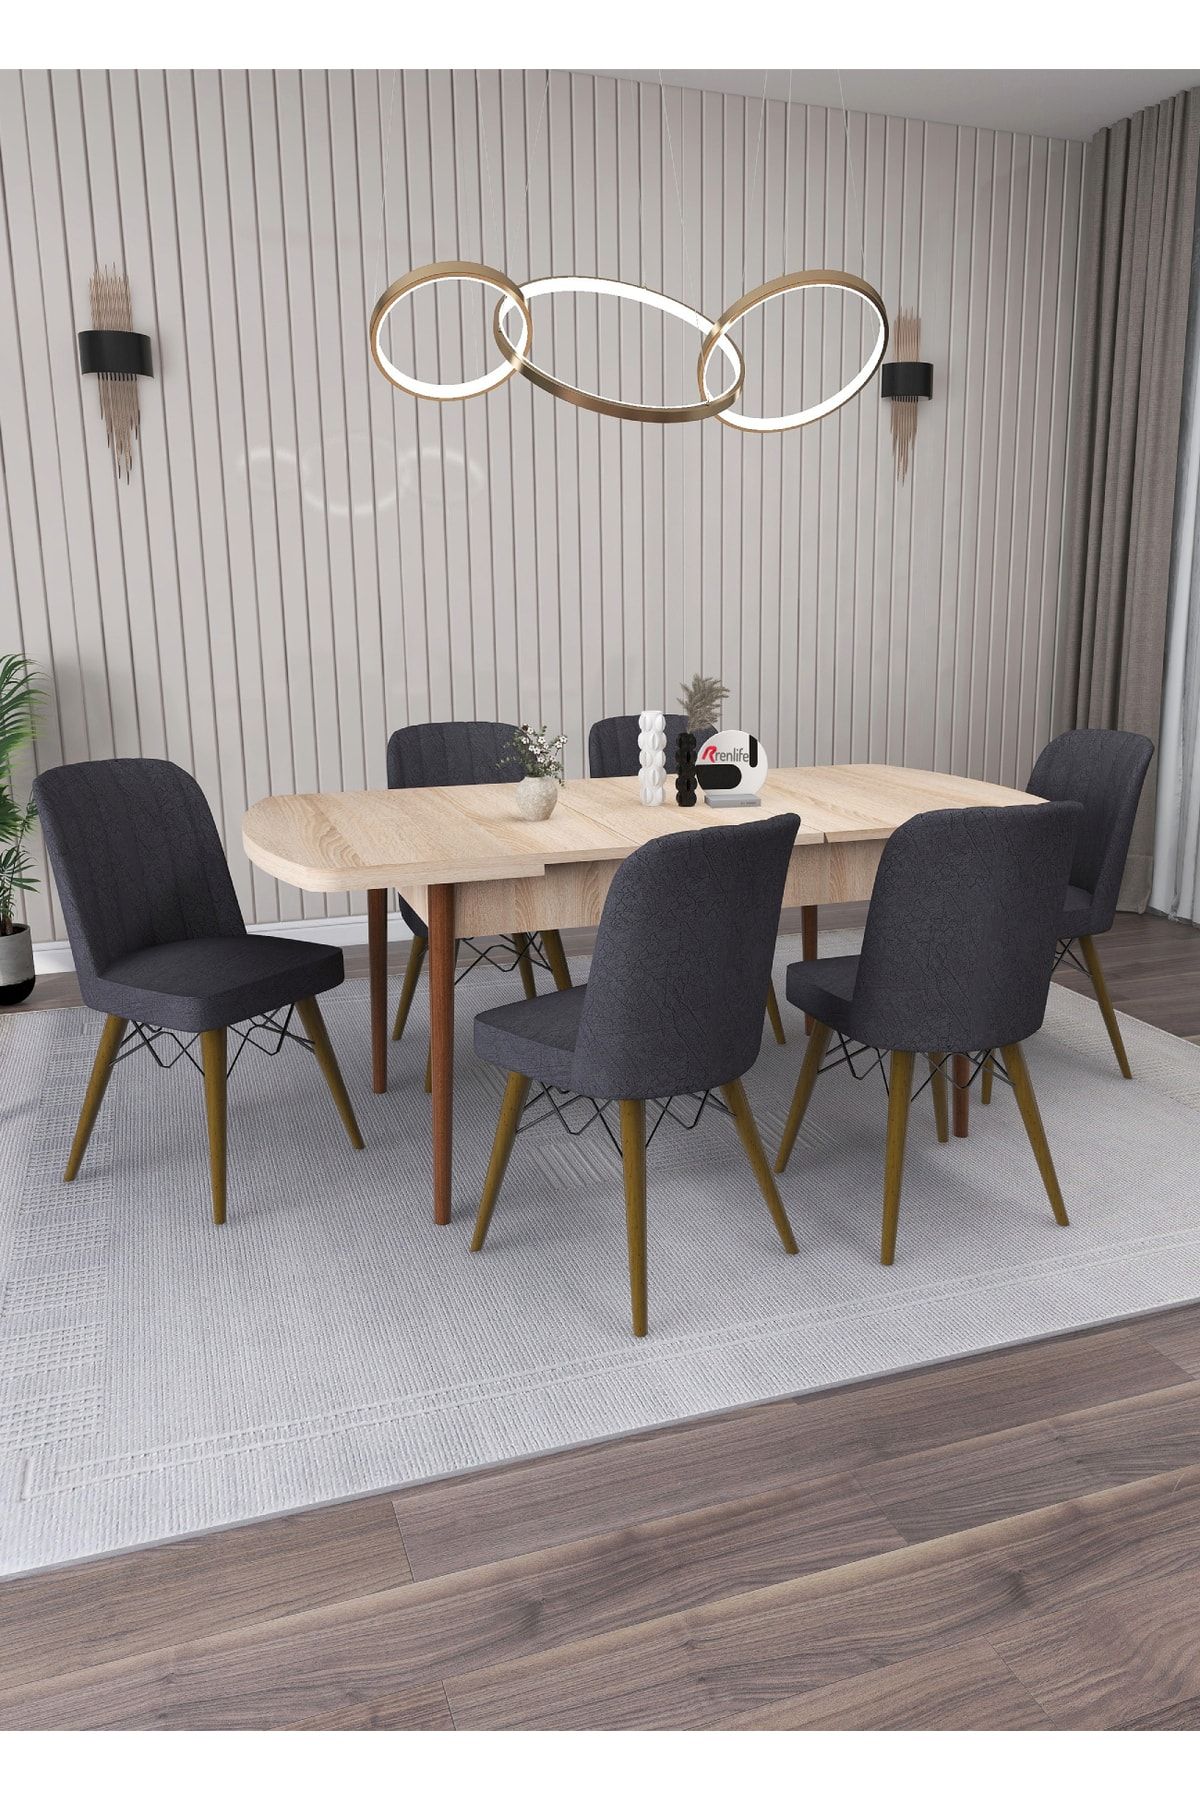 Renlife Yemek Masası Masa Sandalye Takımı Salon Masası Açılabilir 6 Kişilik (SONOMO-KOYU GRİ SANDALYE)